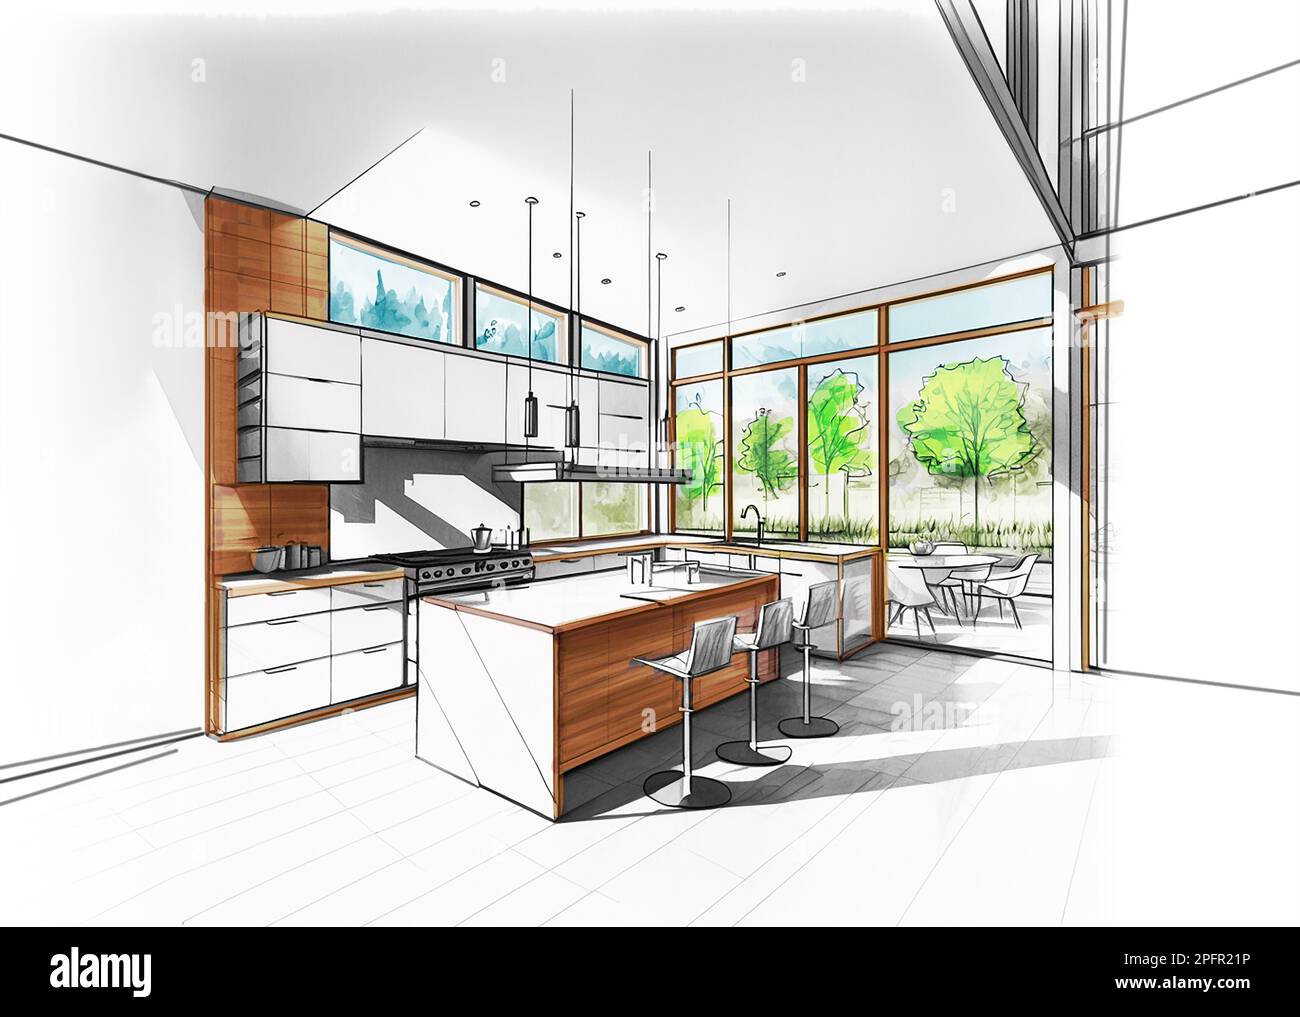 Dessin coloré d'une cuisine moderne moderne, design architectural Banque D'Images